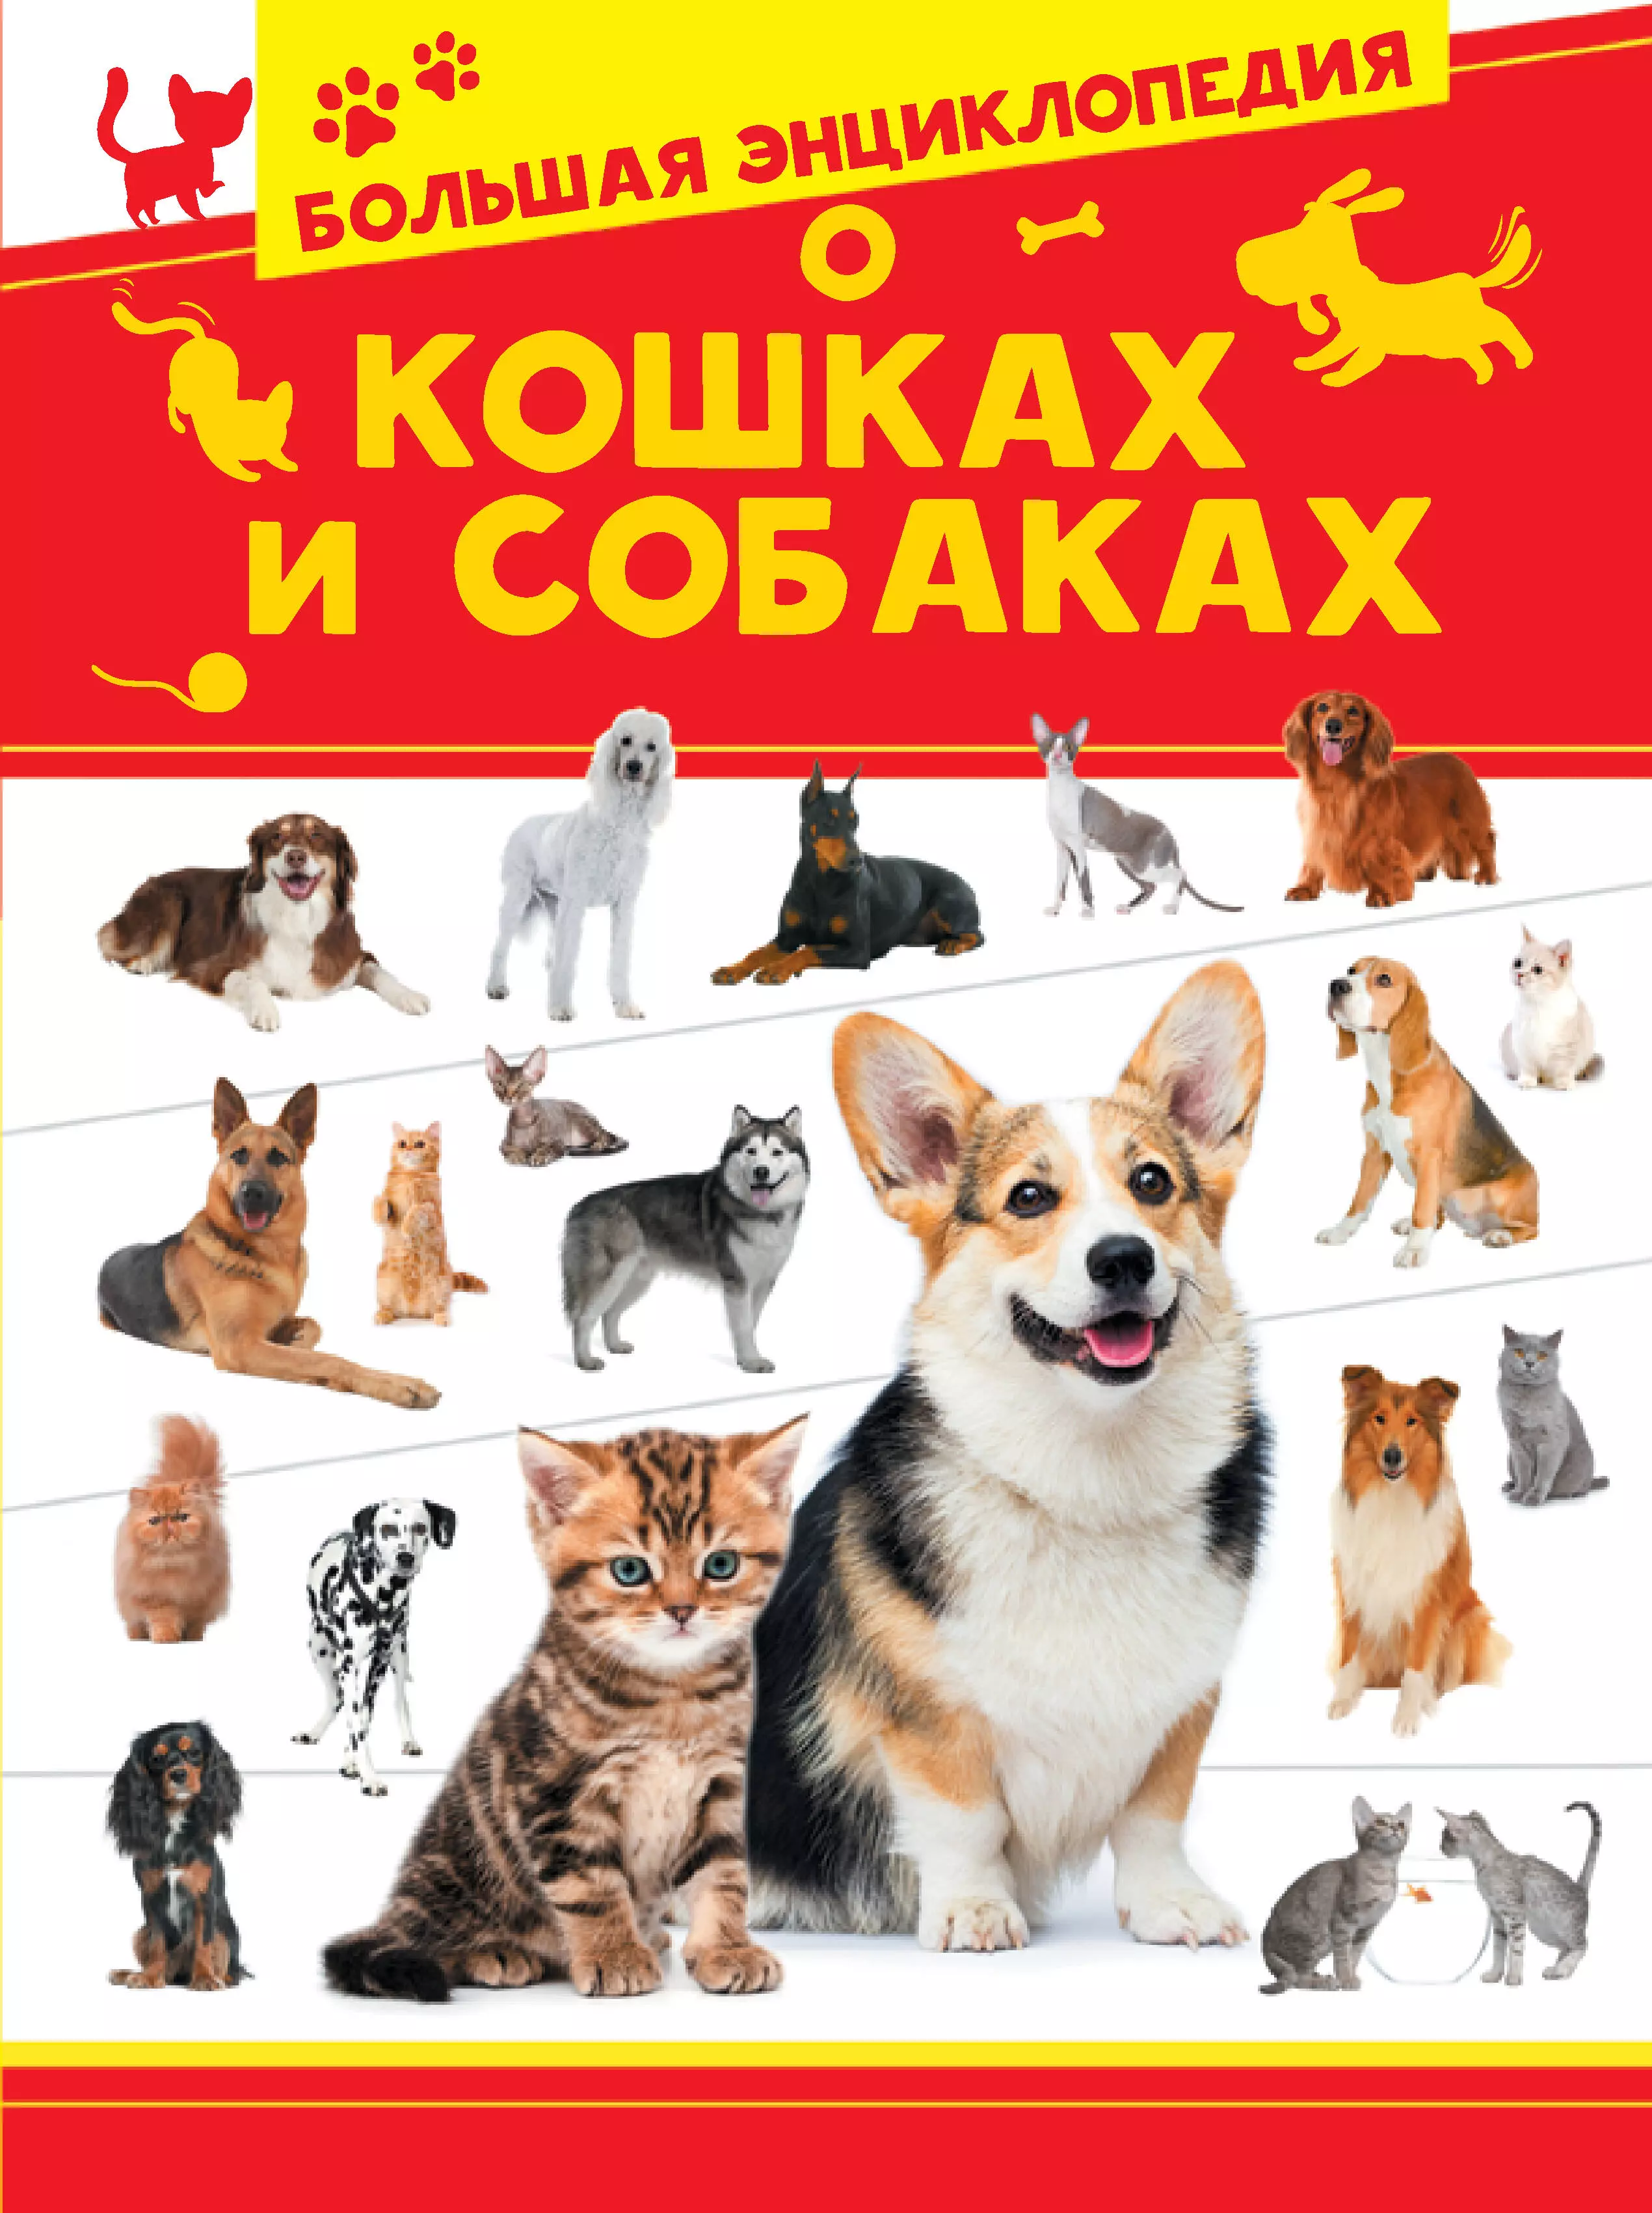 Большая энциклопедия о кошках и собаках большая энциклопедия о кошках и собаках